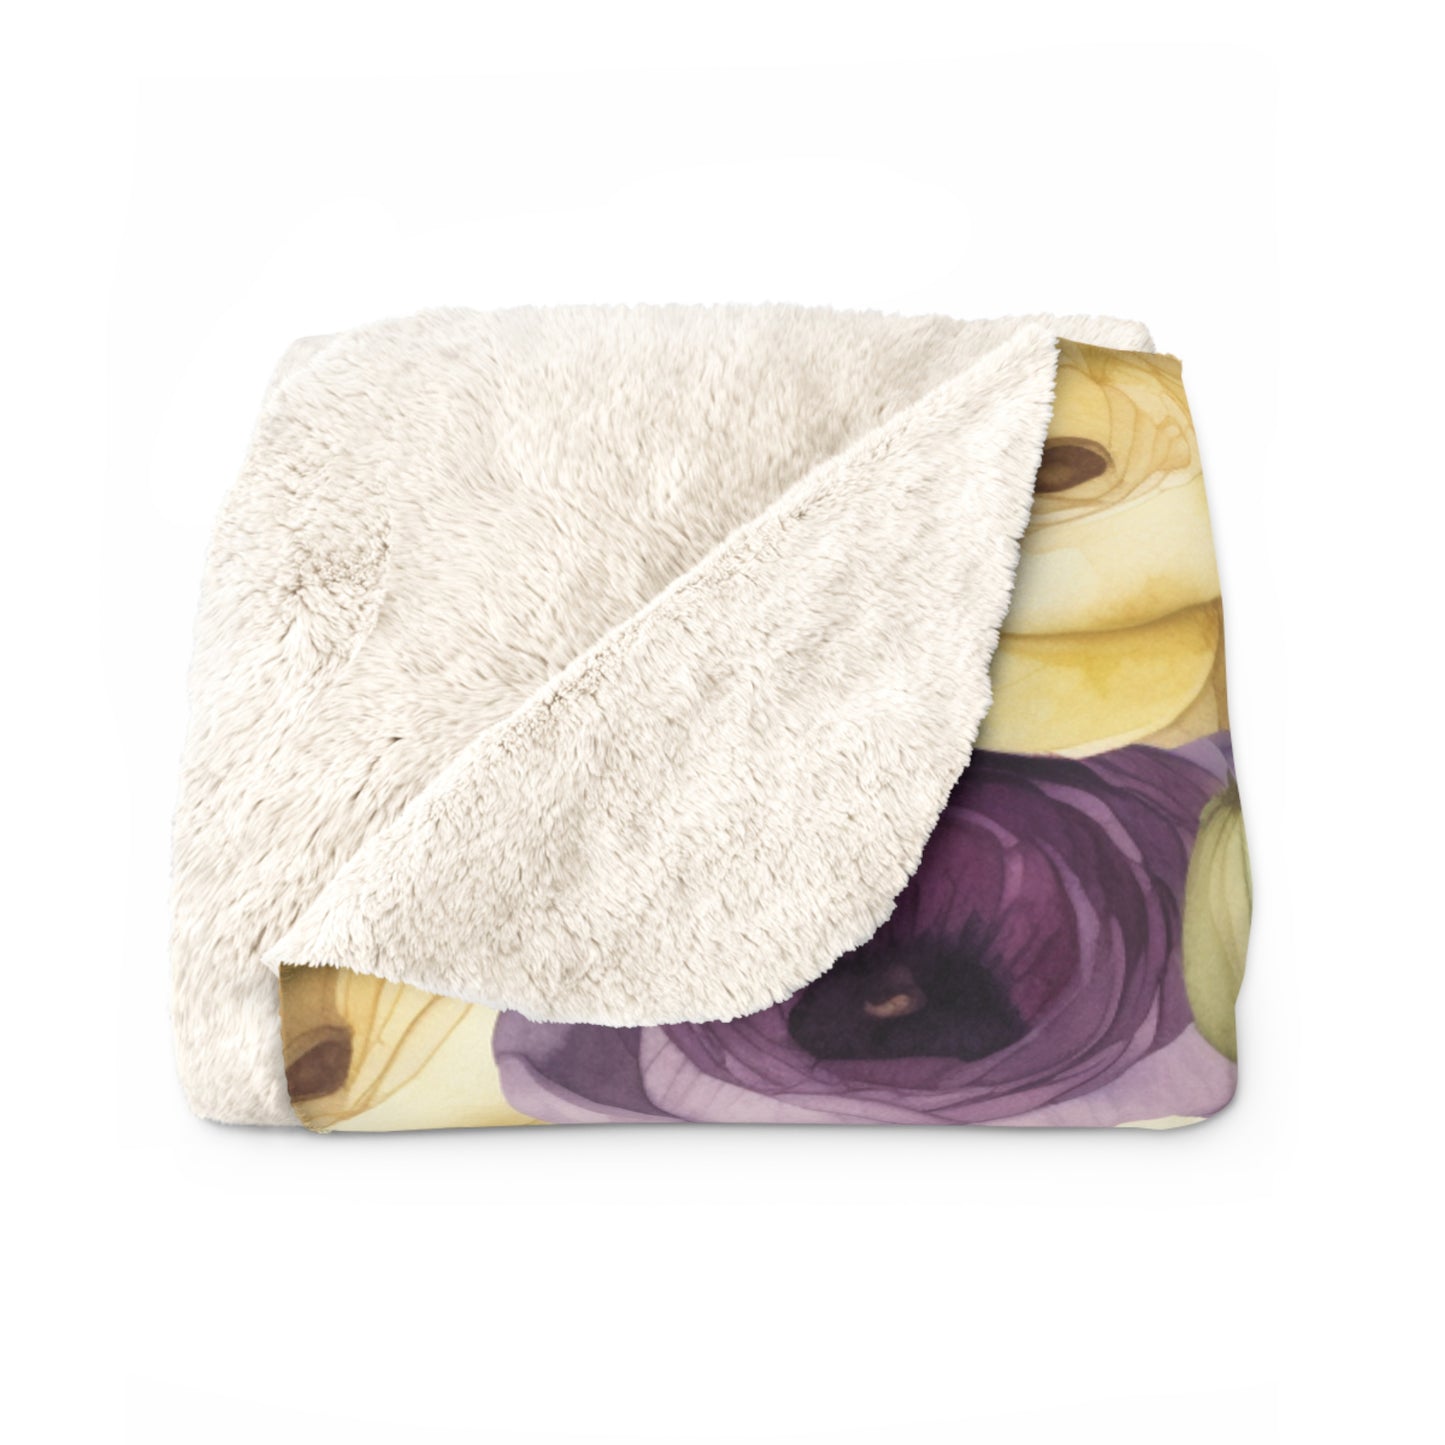 Floral Blanket, Purple Sherpa Throw Blanket